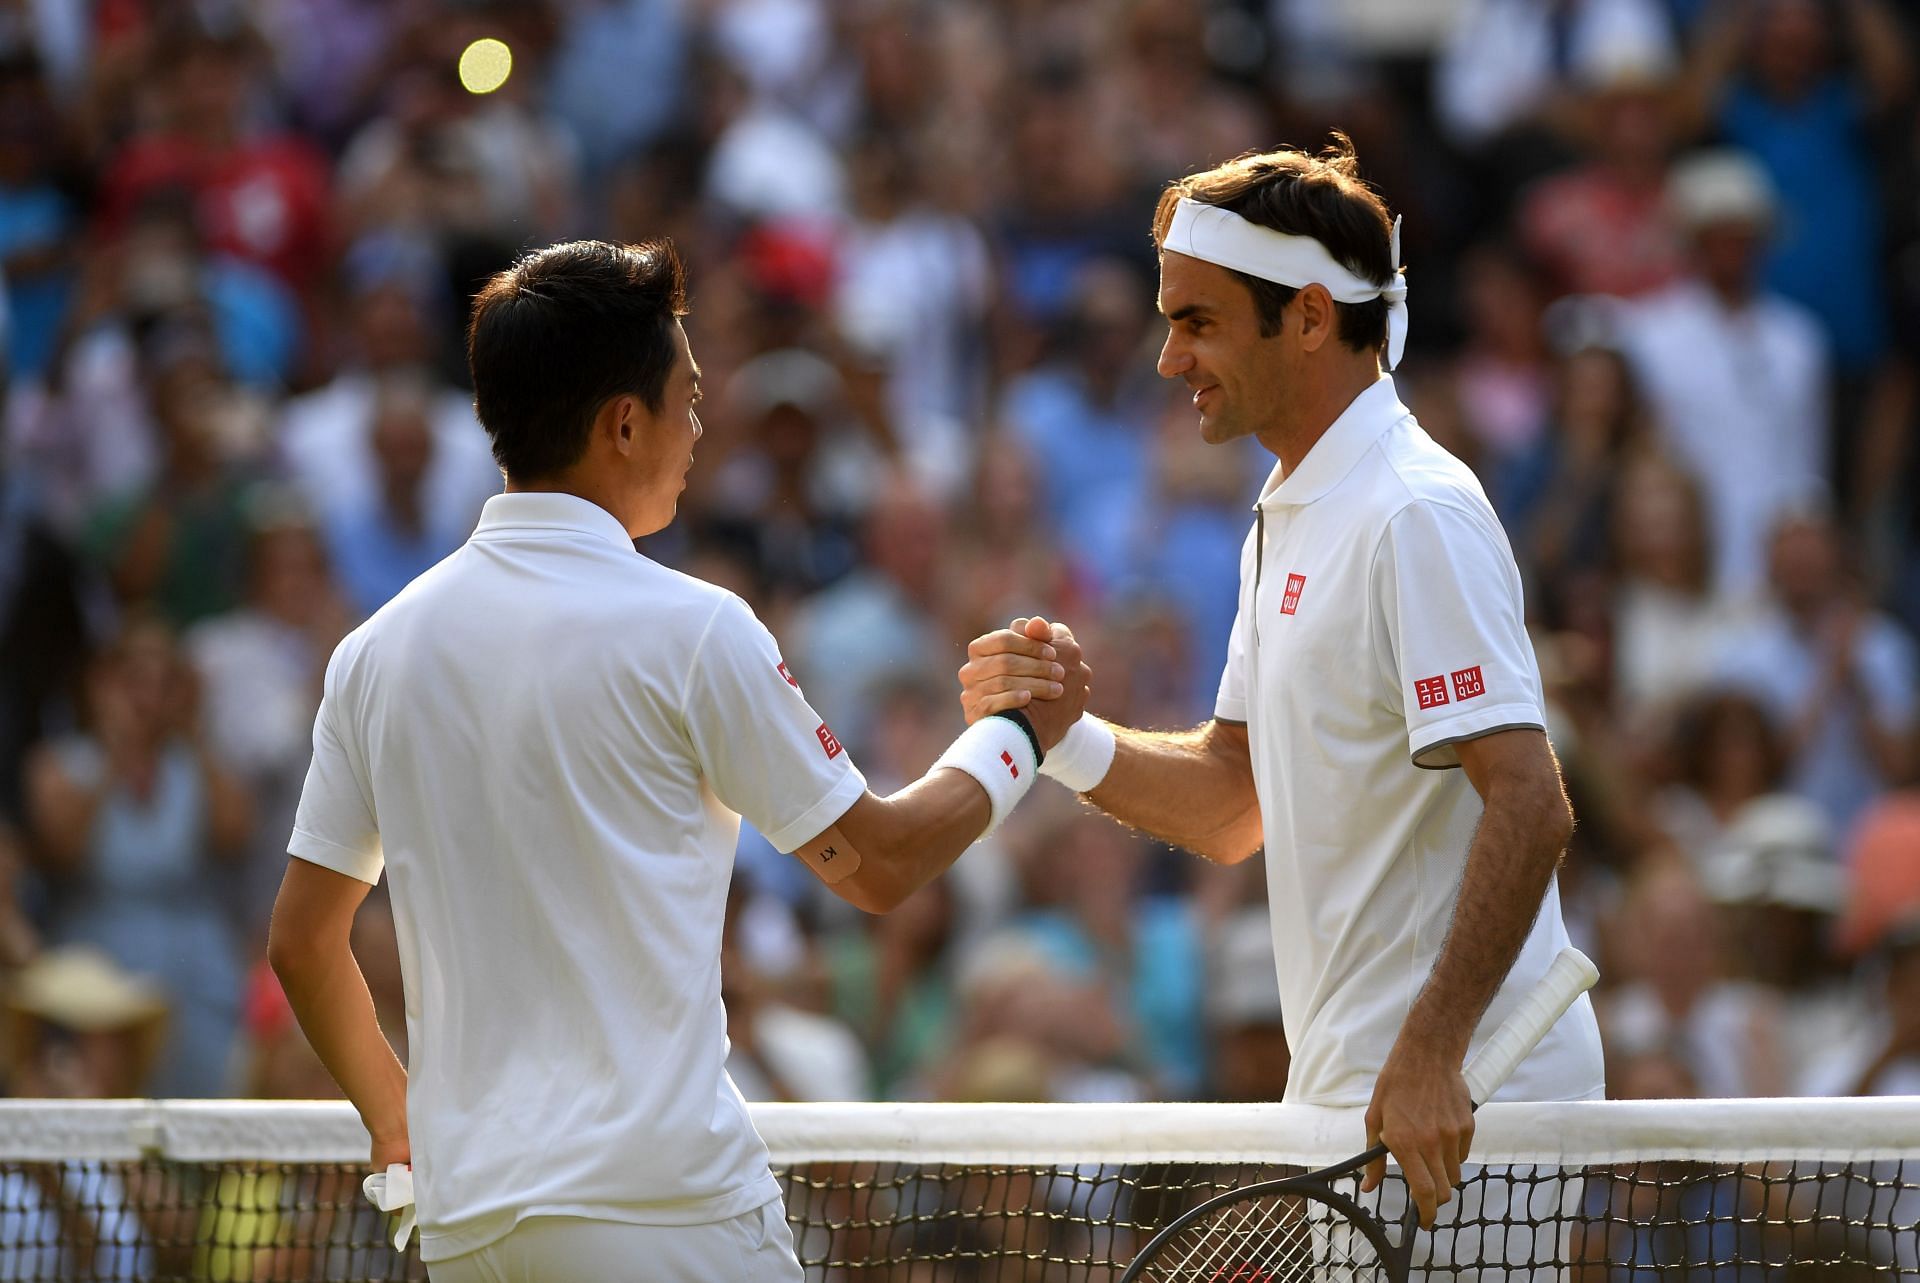 Roger Federer after beating Kei Nishikori at Wimbledon 2019